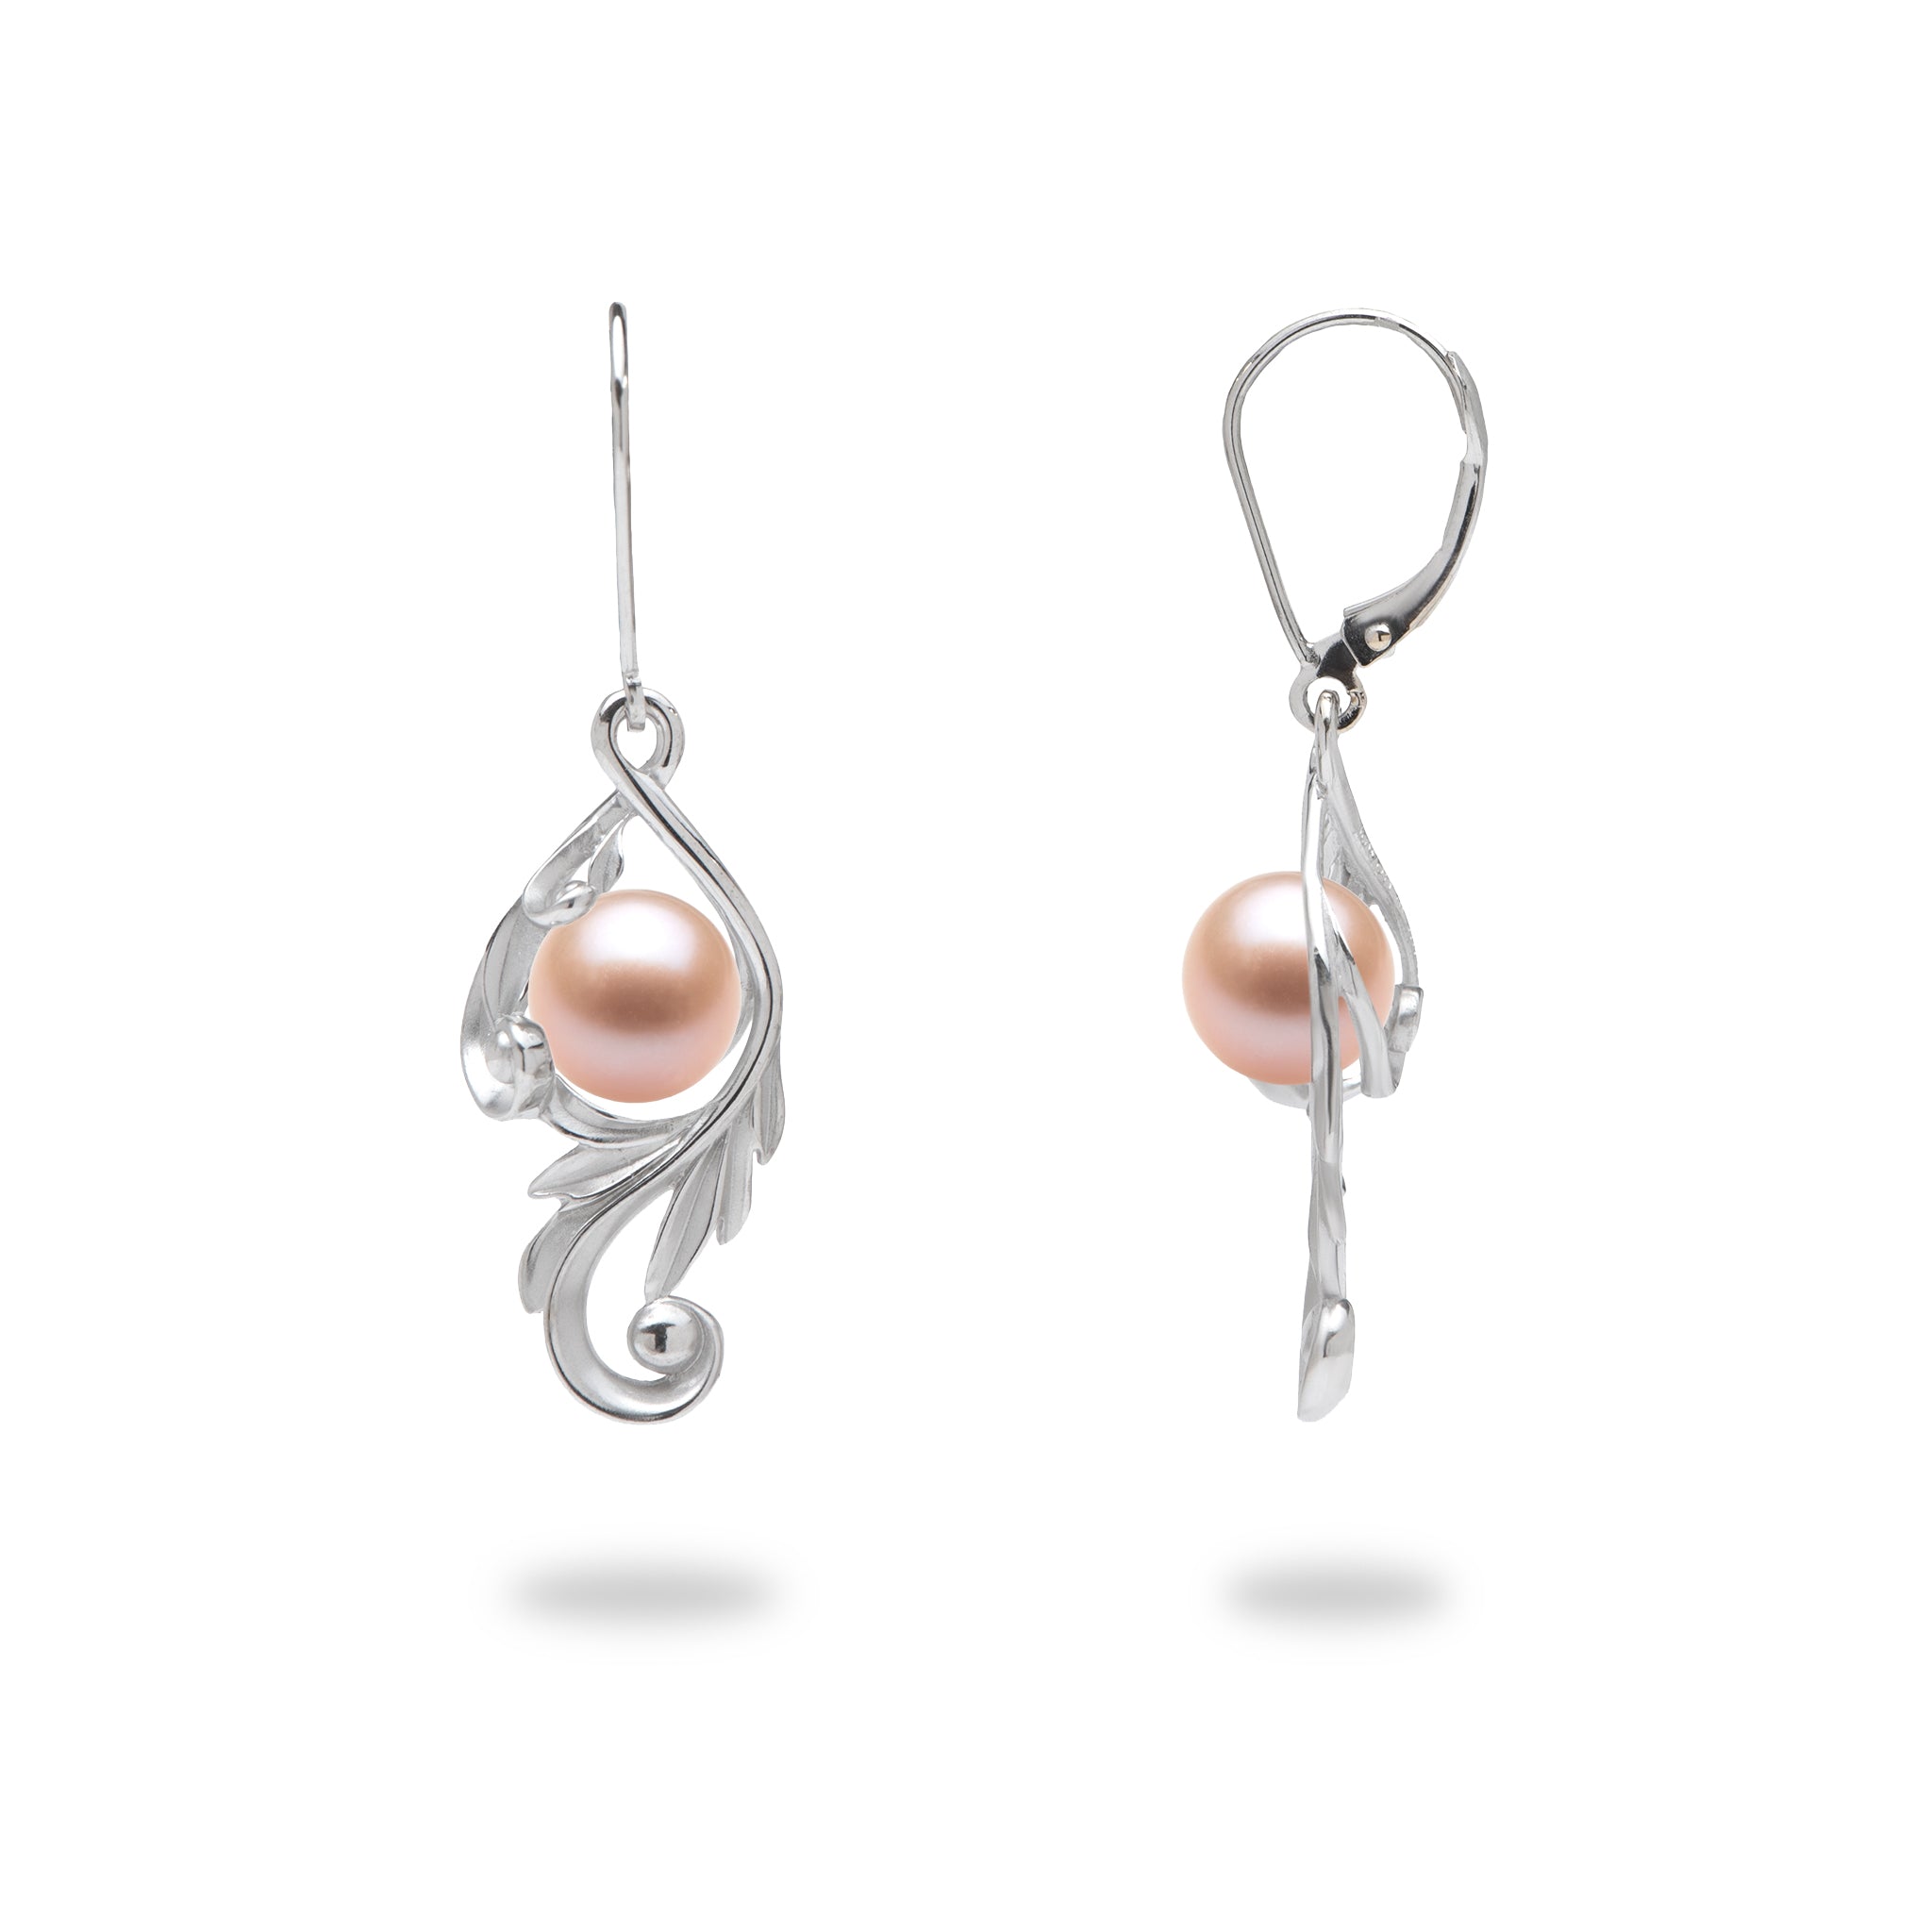 Choisissez une boucle d'oreilles de défilement perle maile en or blanc